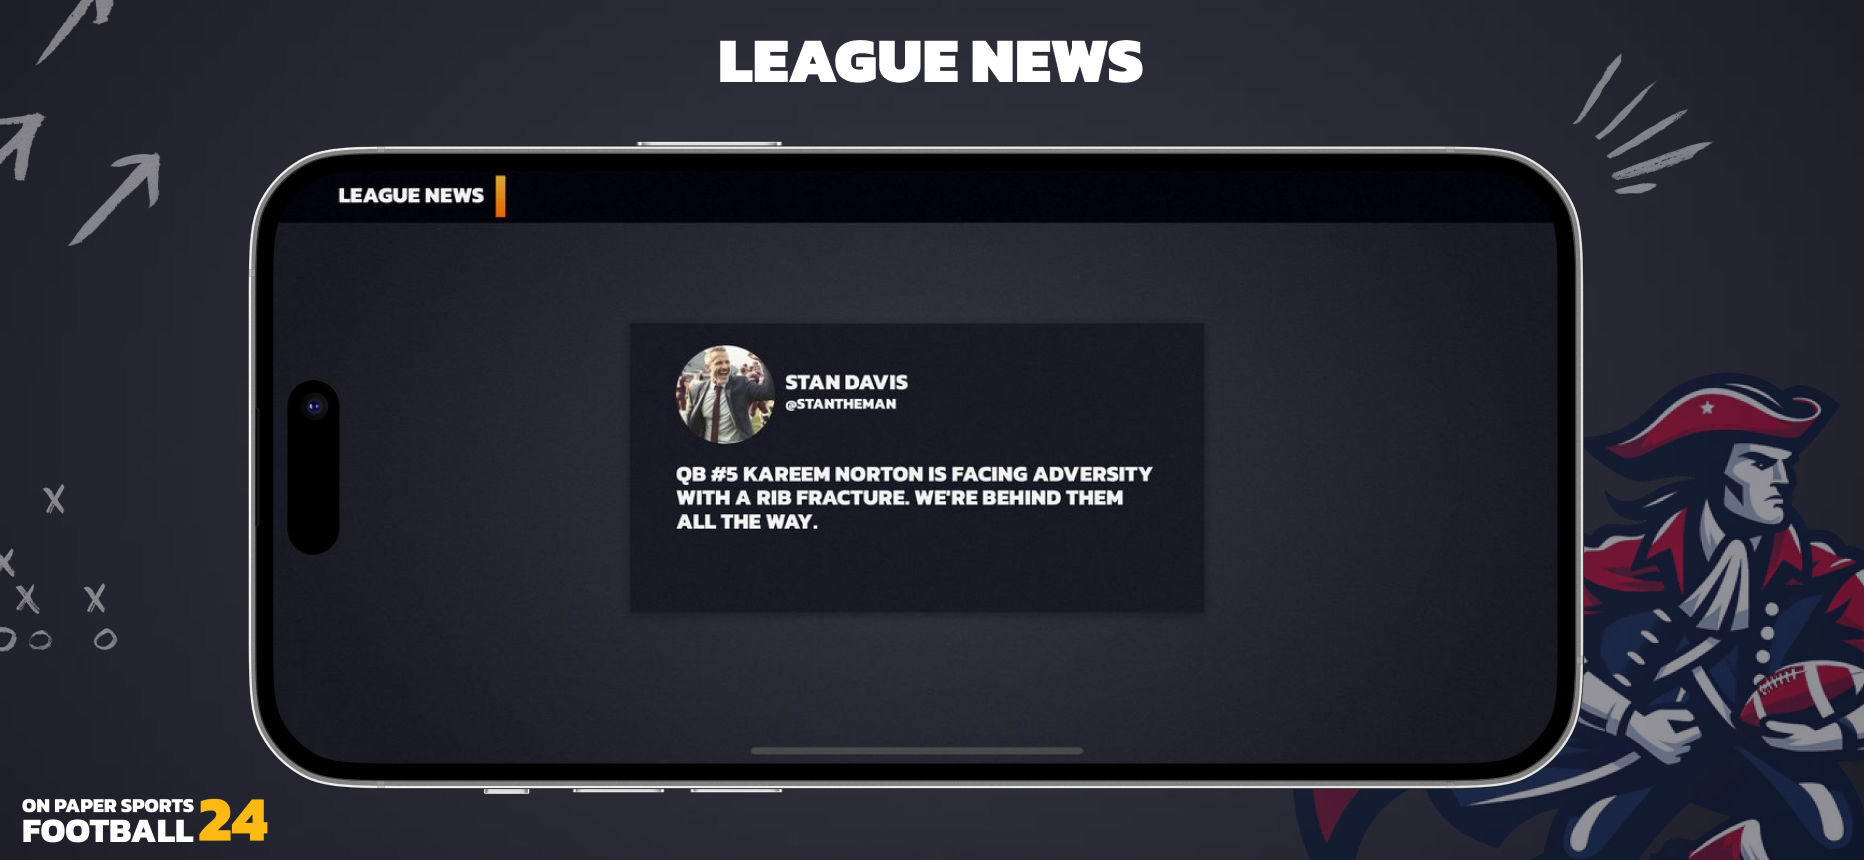 League news